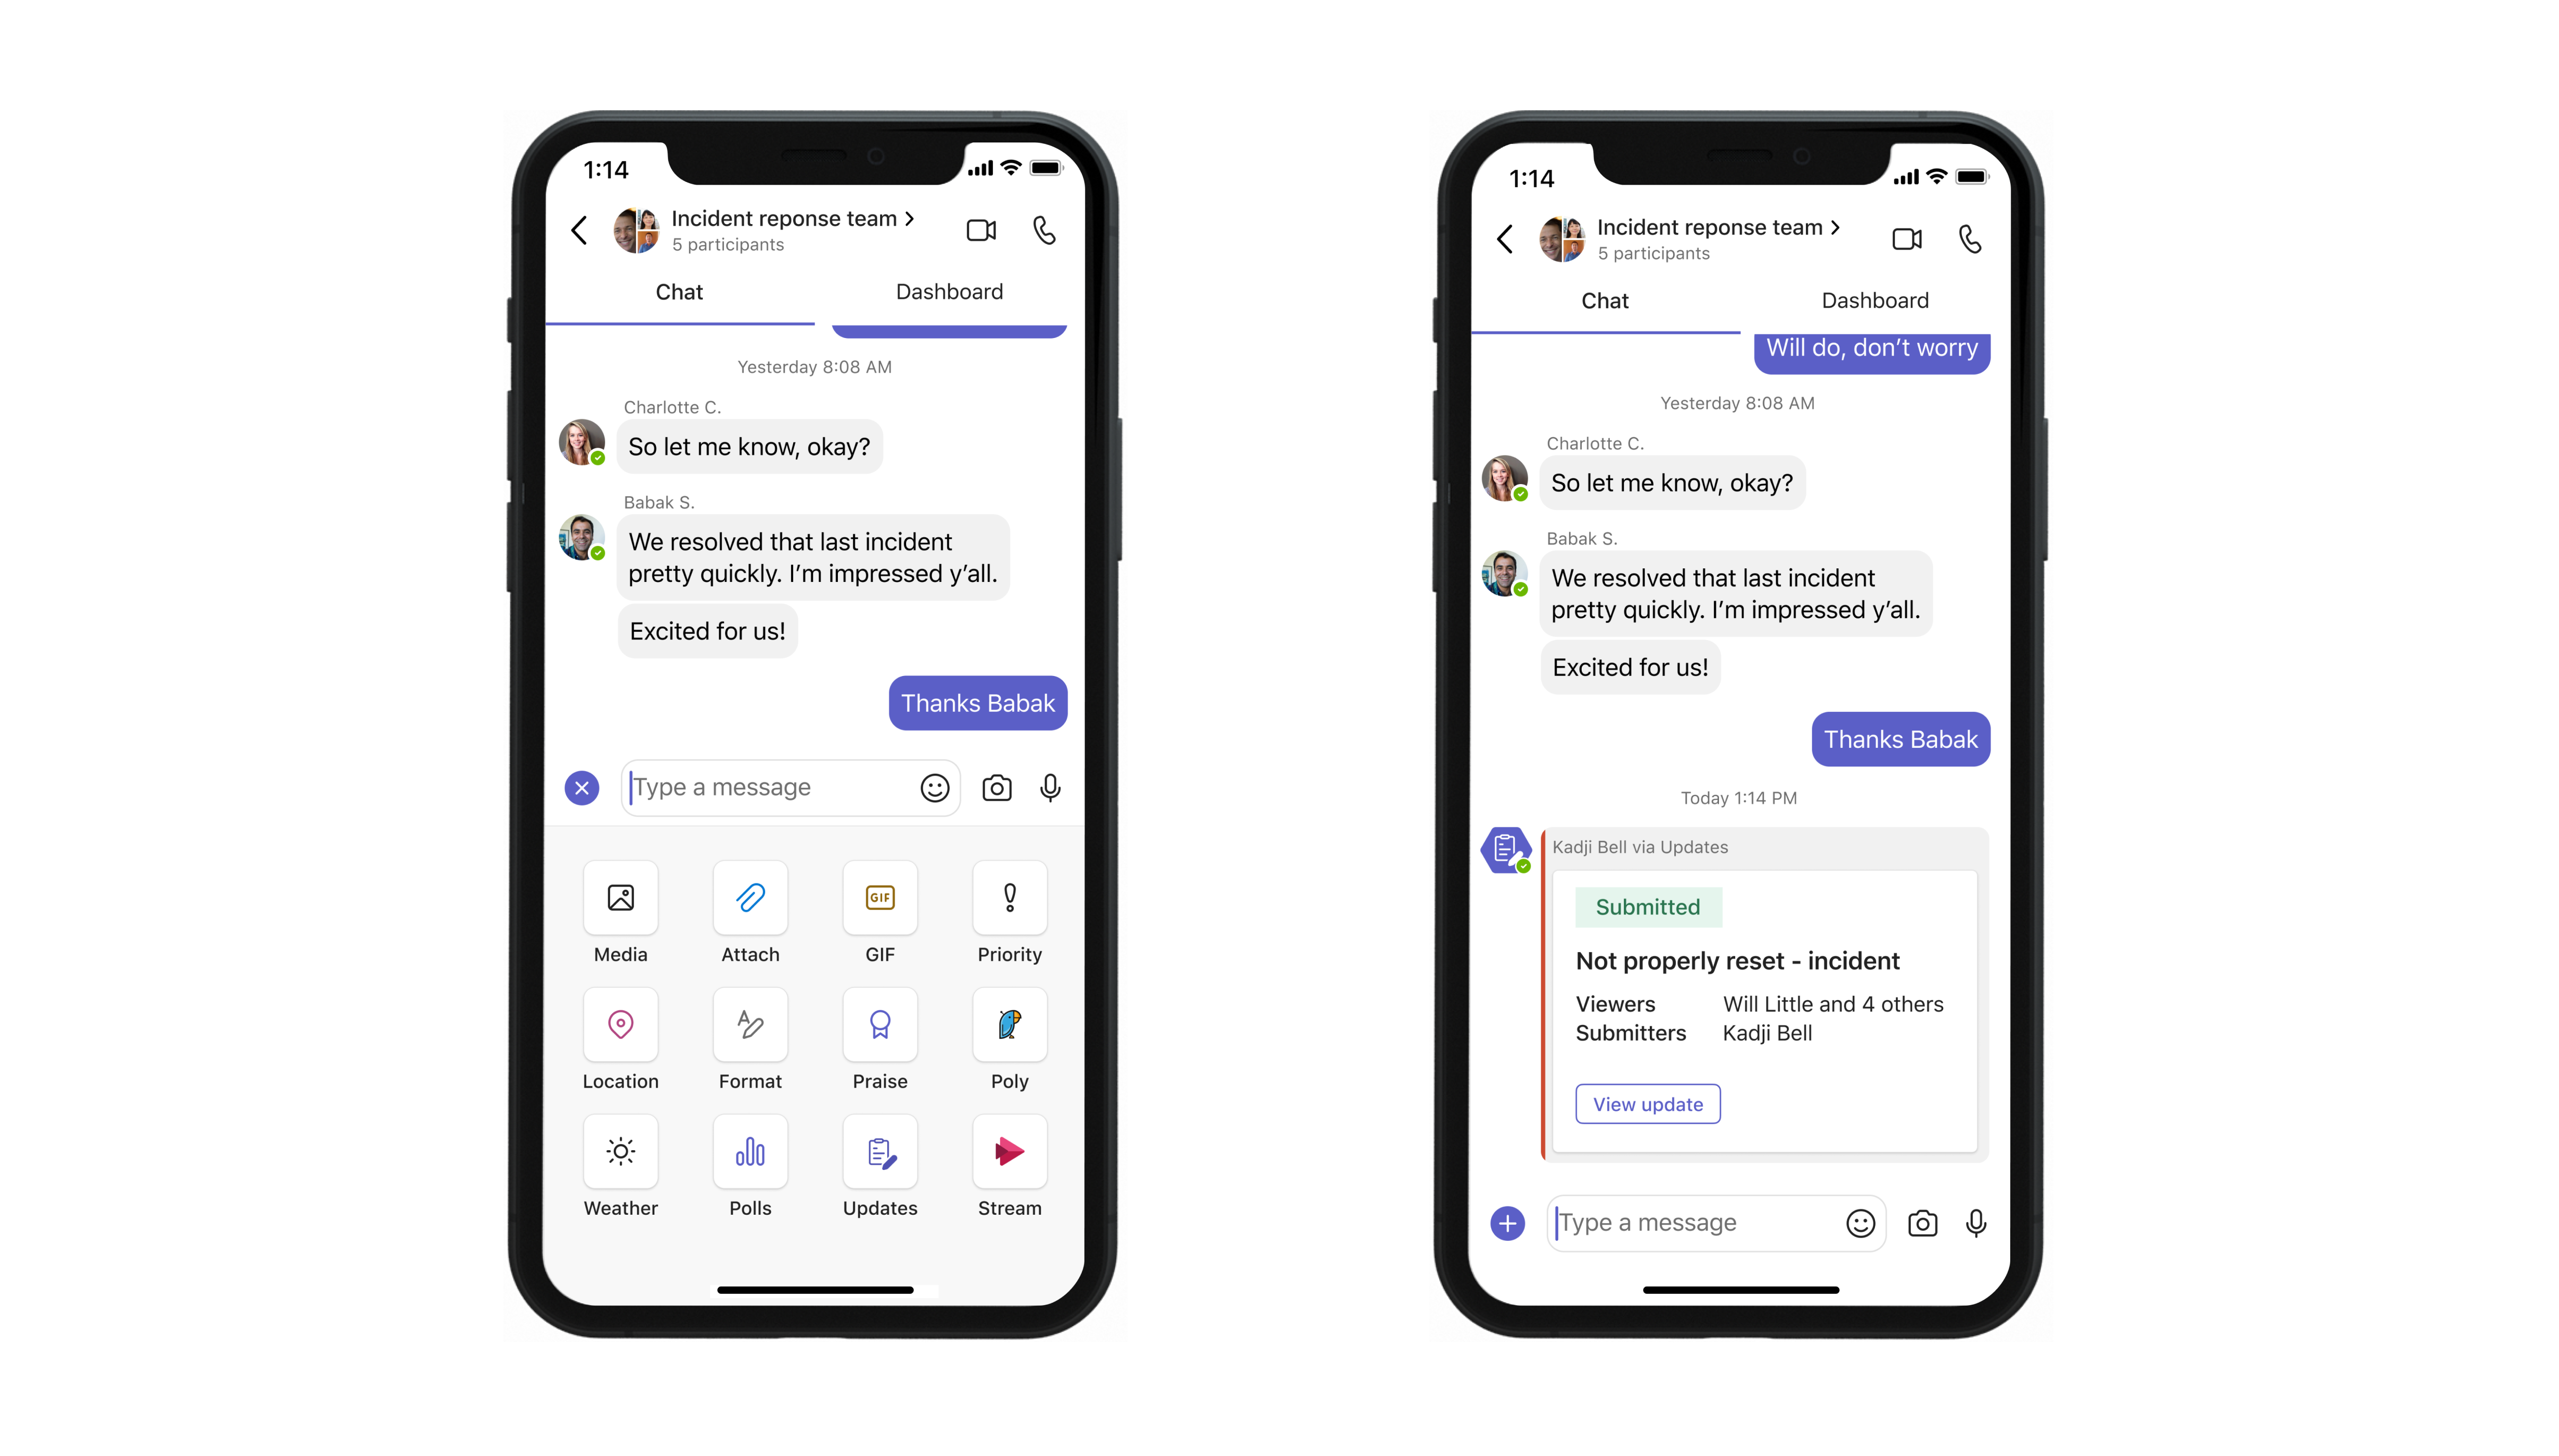 Mobil, der viser meddelelsesudvidelsen i Opdateringer-appen i Microsoft Teams